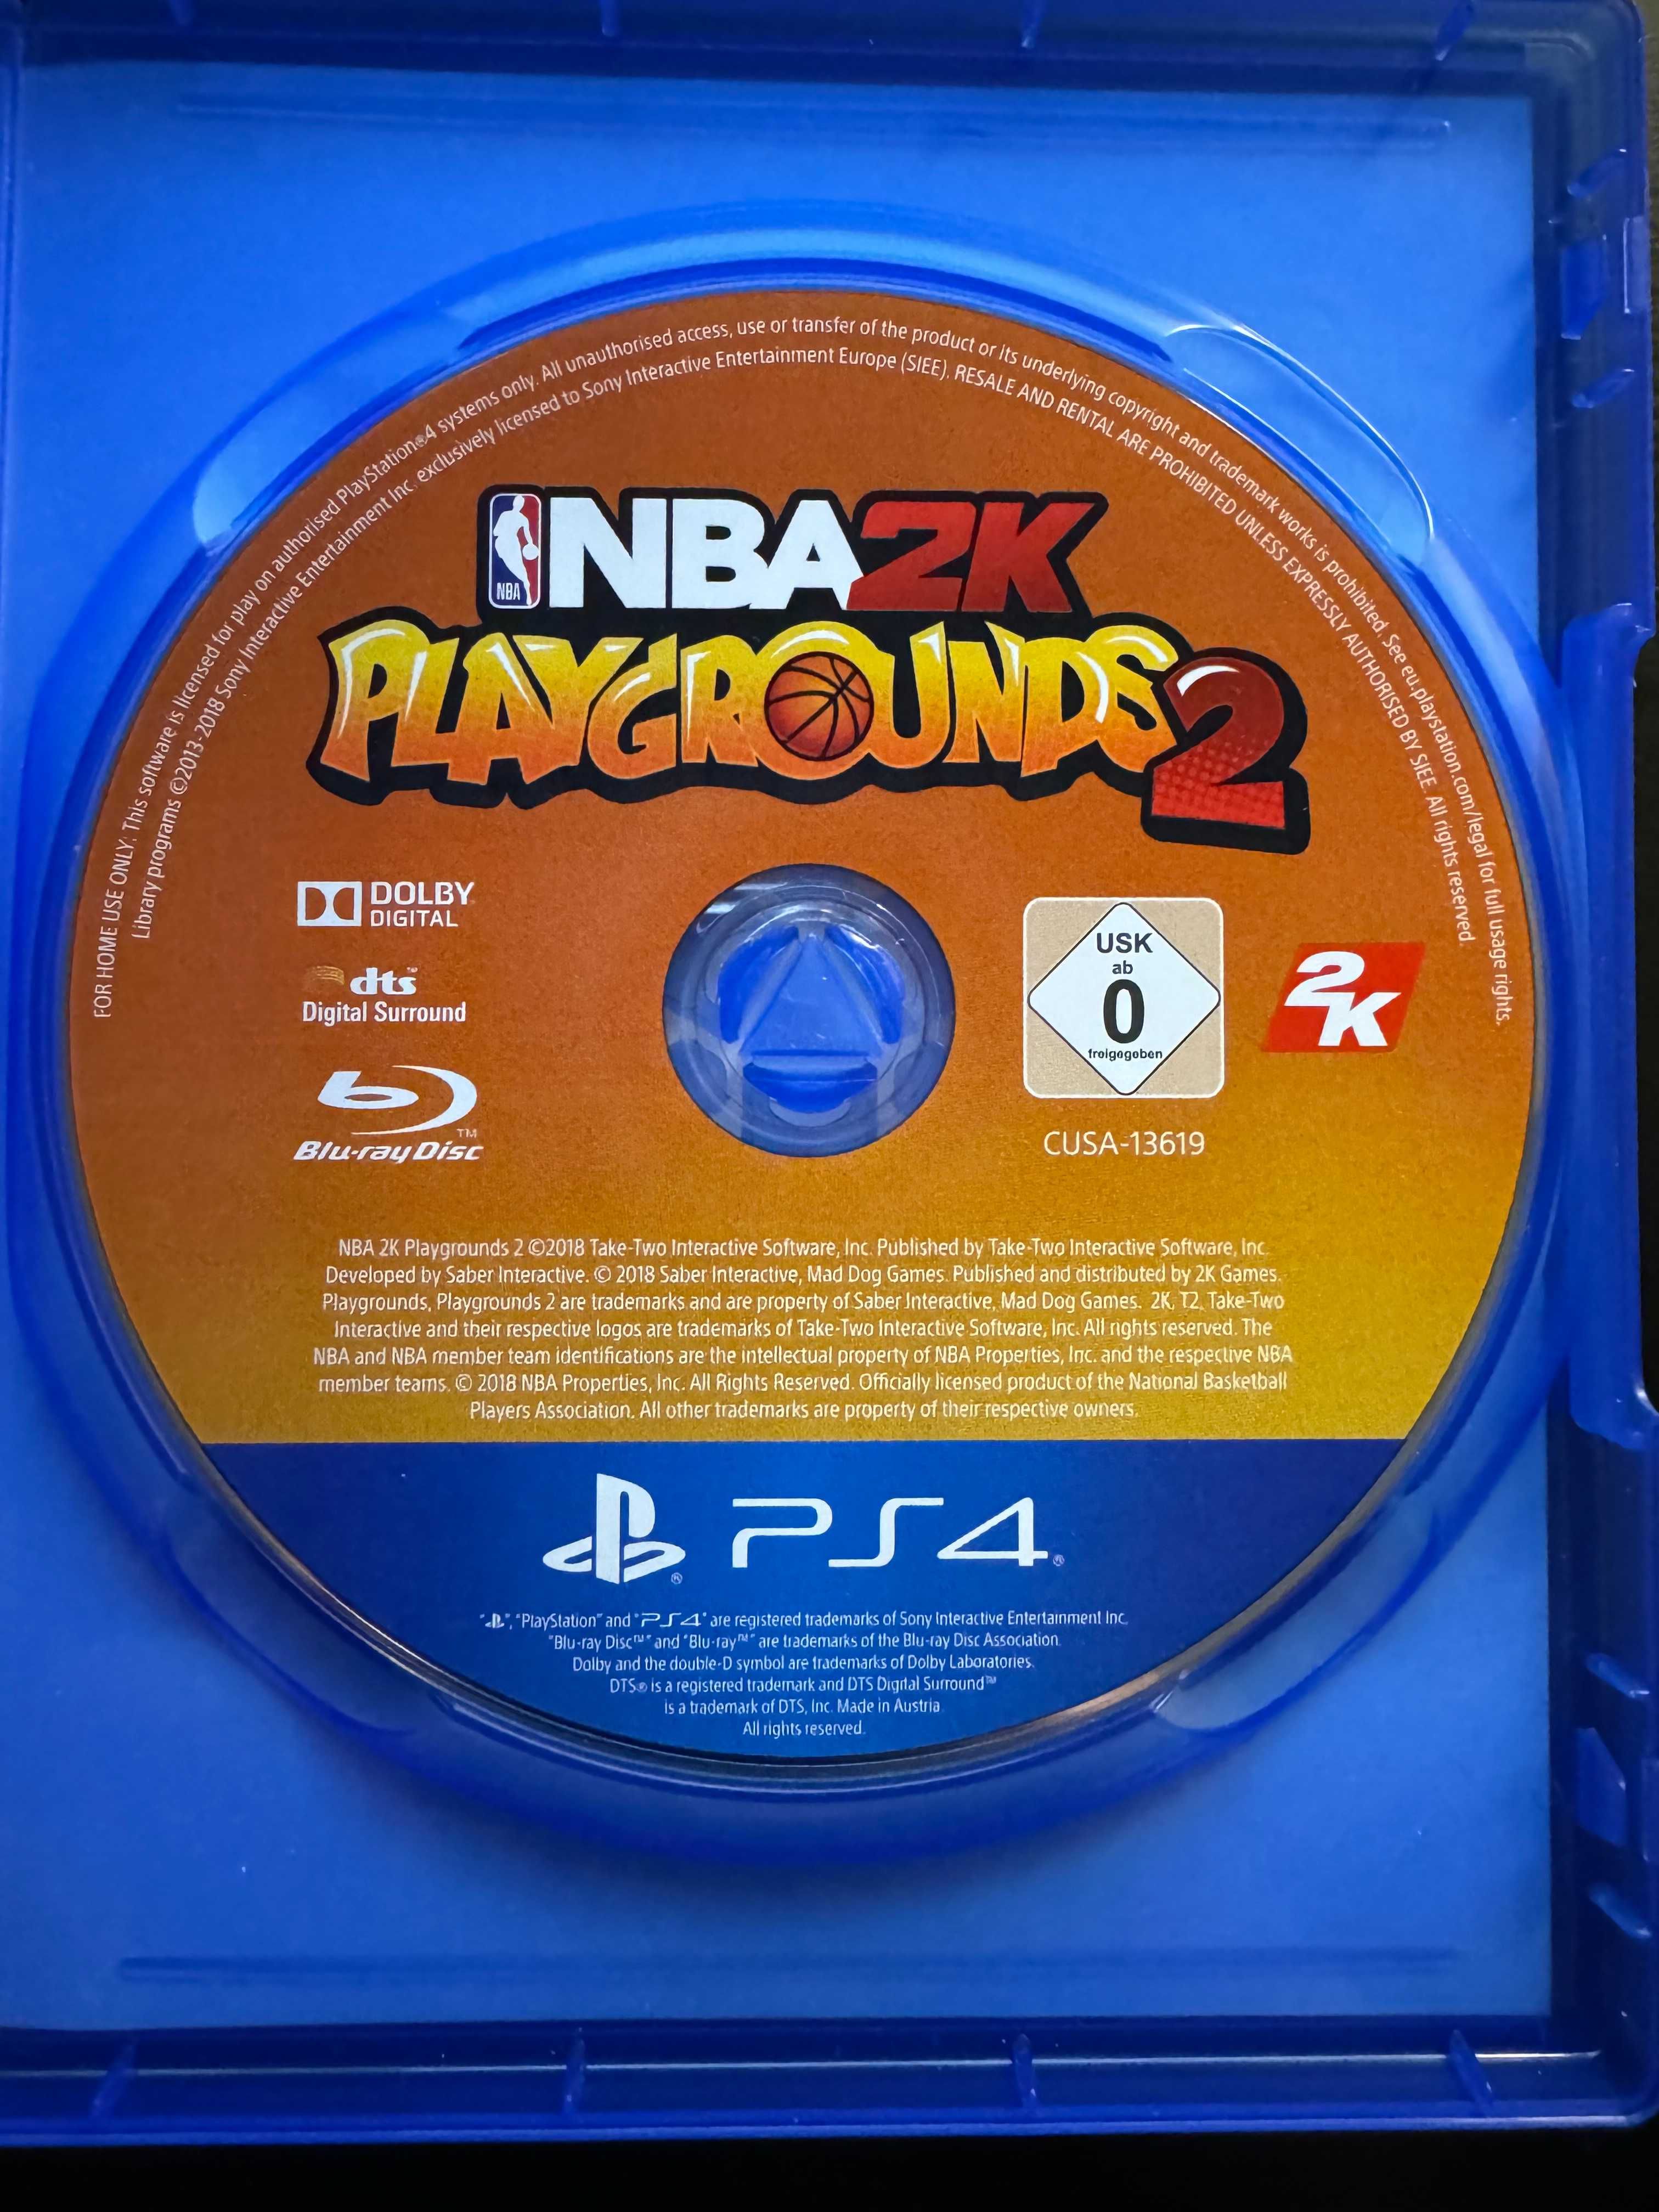 NBA 2K Playgrounds 2 PS4